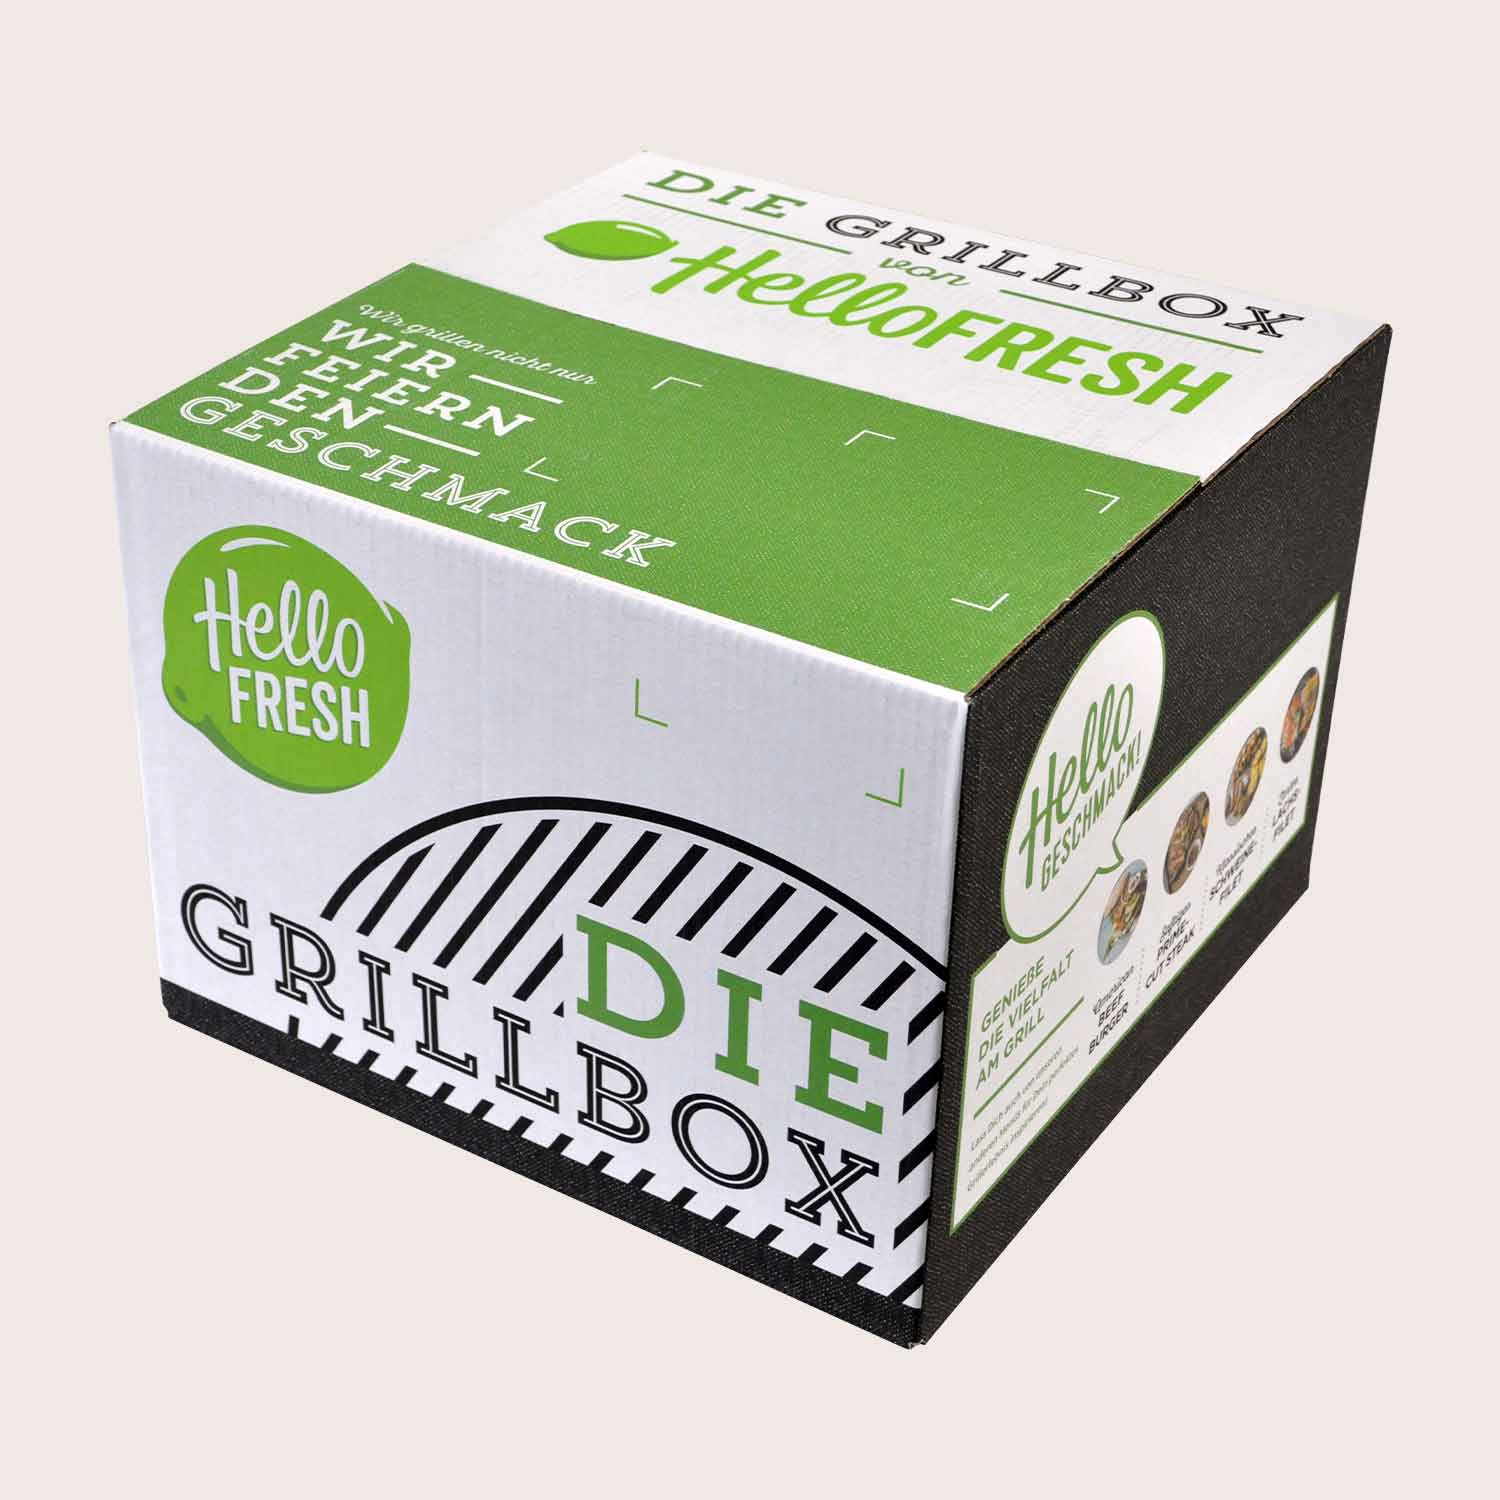 Packaging as a brand ambassador: HelloFresh